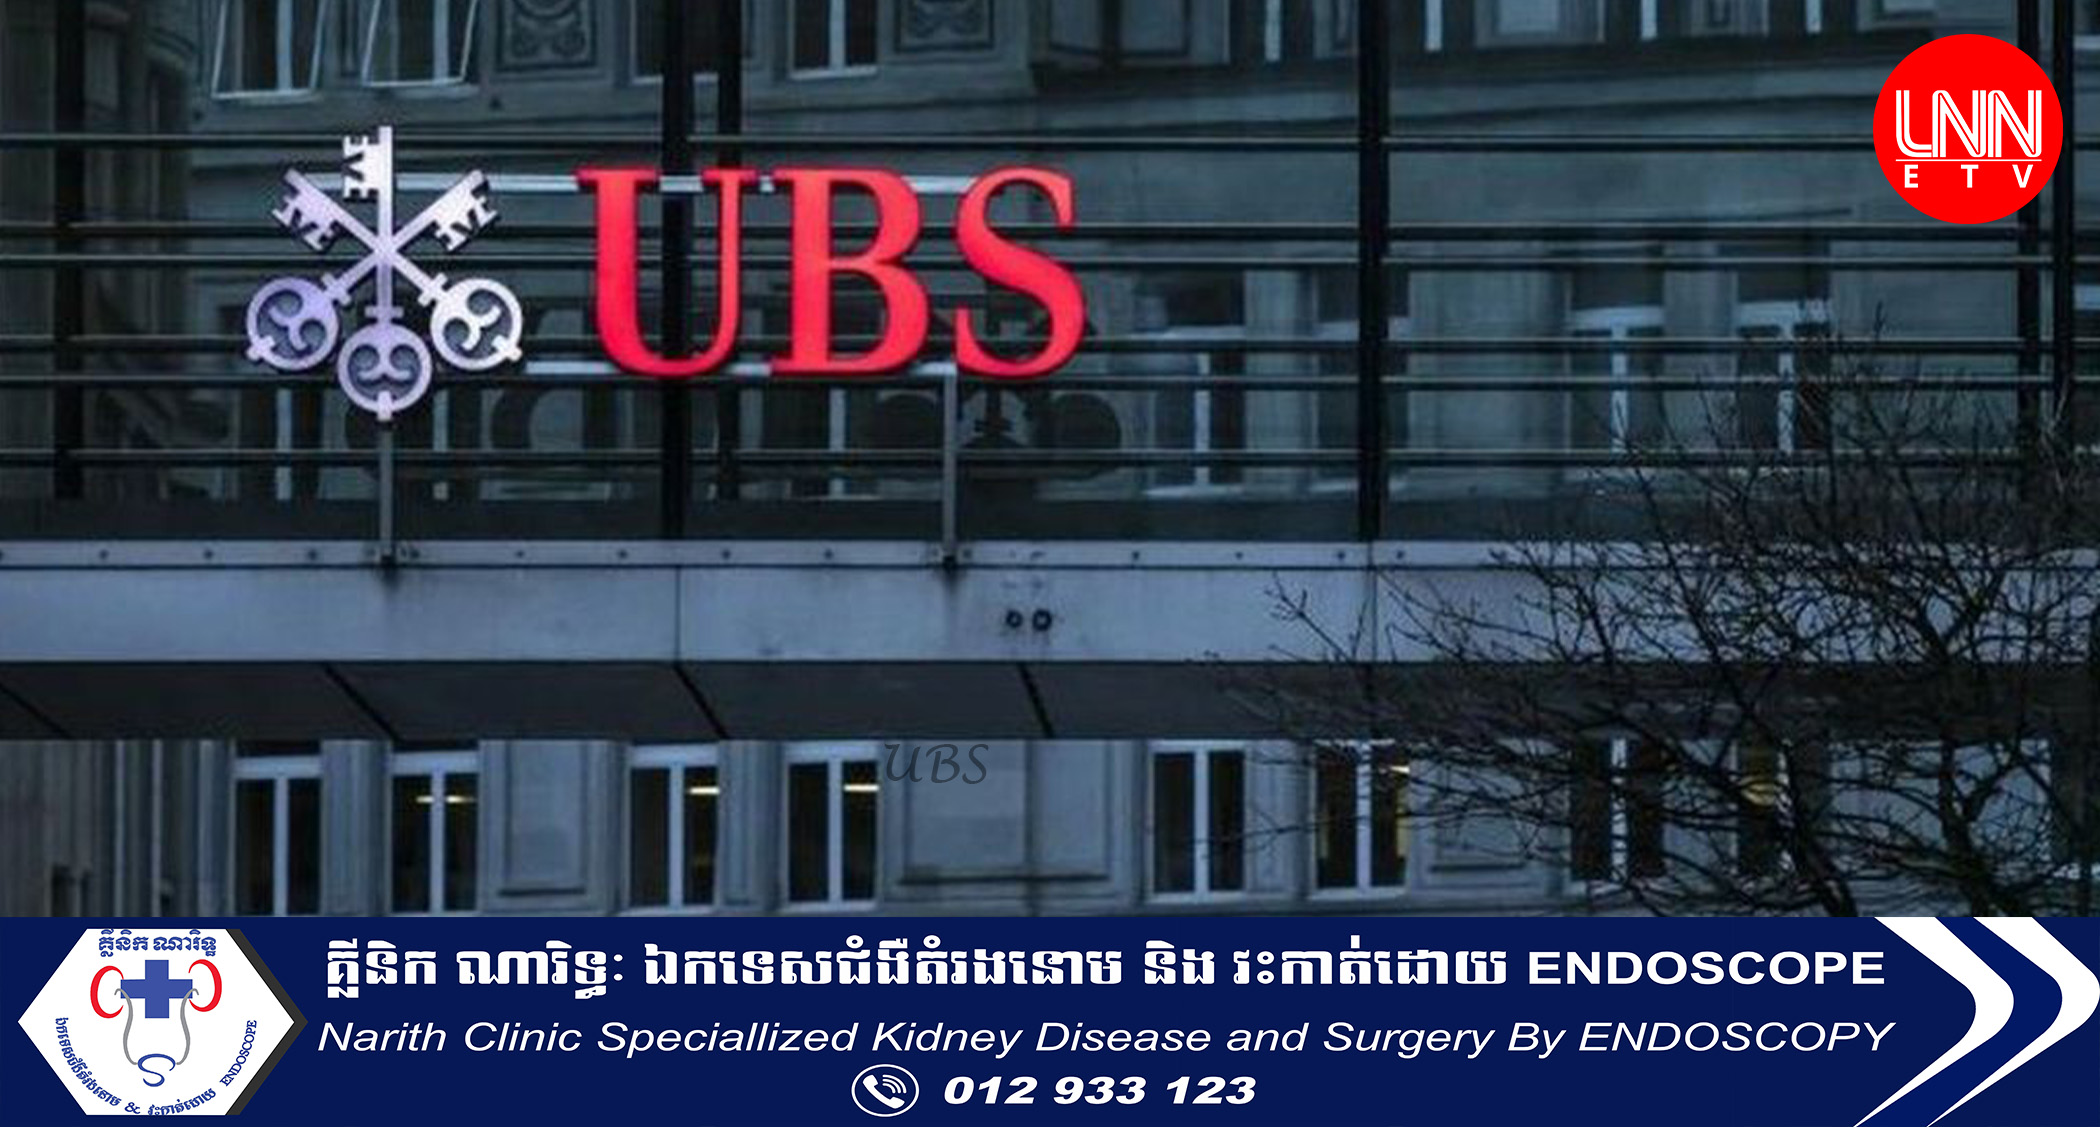 ធនាគារ UBS របស់ប្រទេសស្វីសយល់ព្រម 'ការសង្គ្រោះបន្ទាន់' របស់ ធនាគារ Credit Suisse